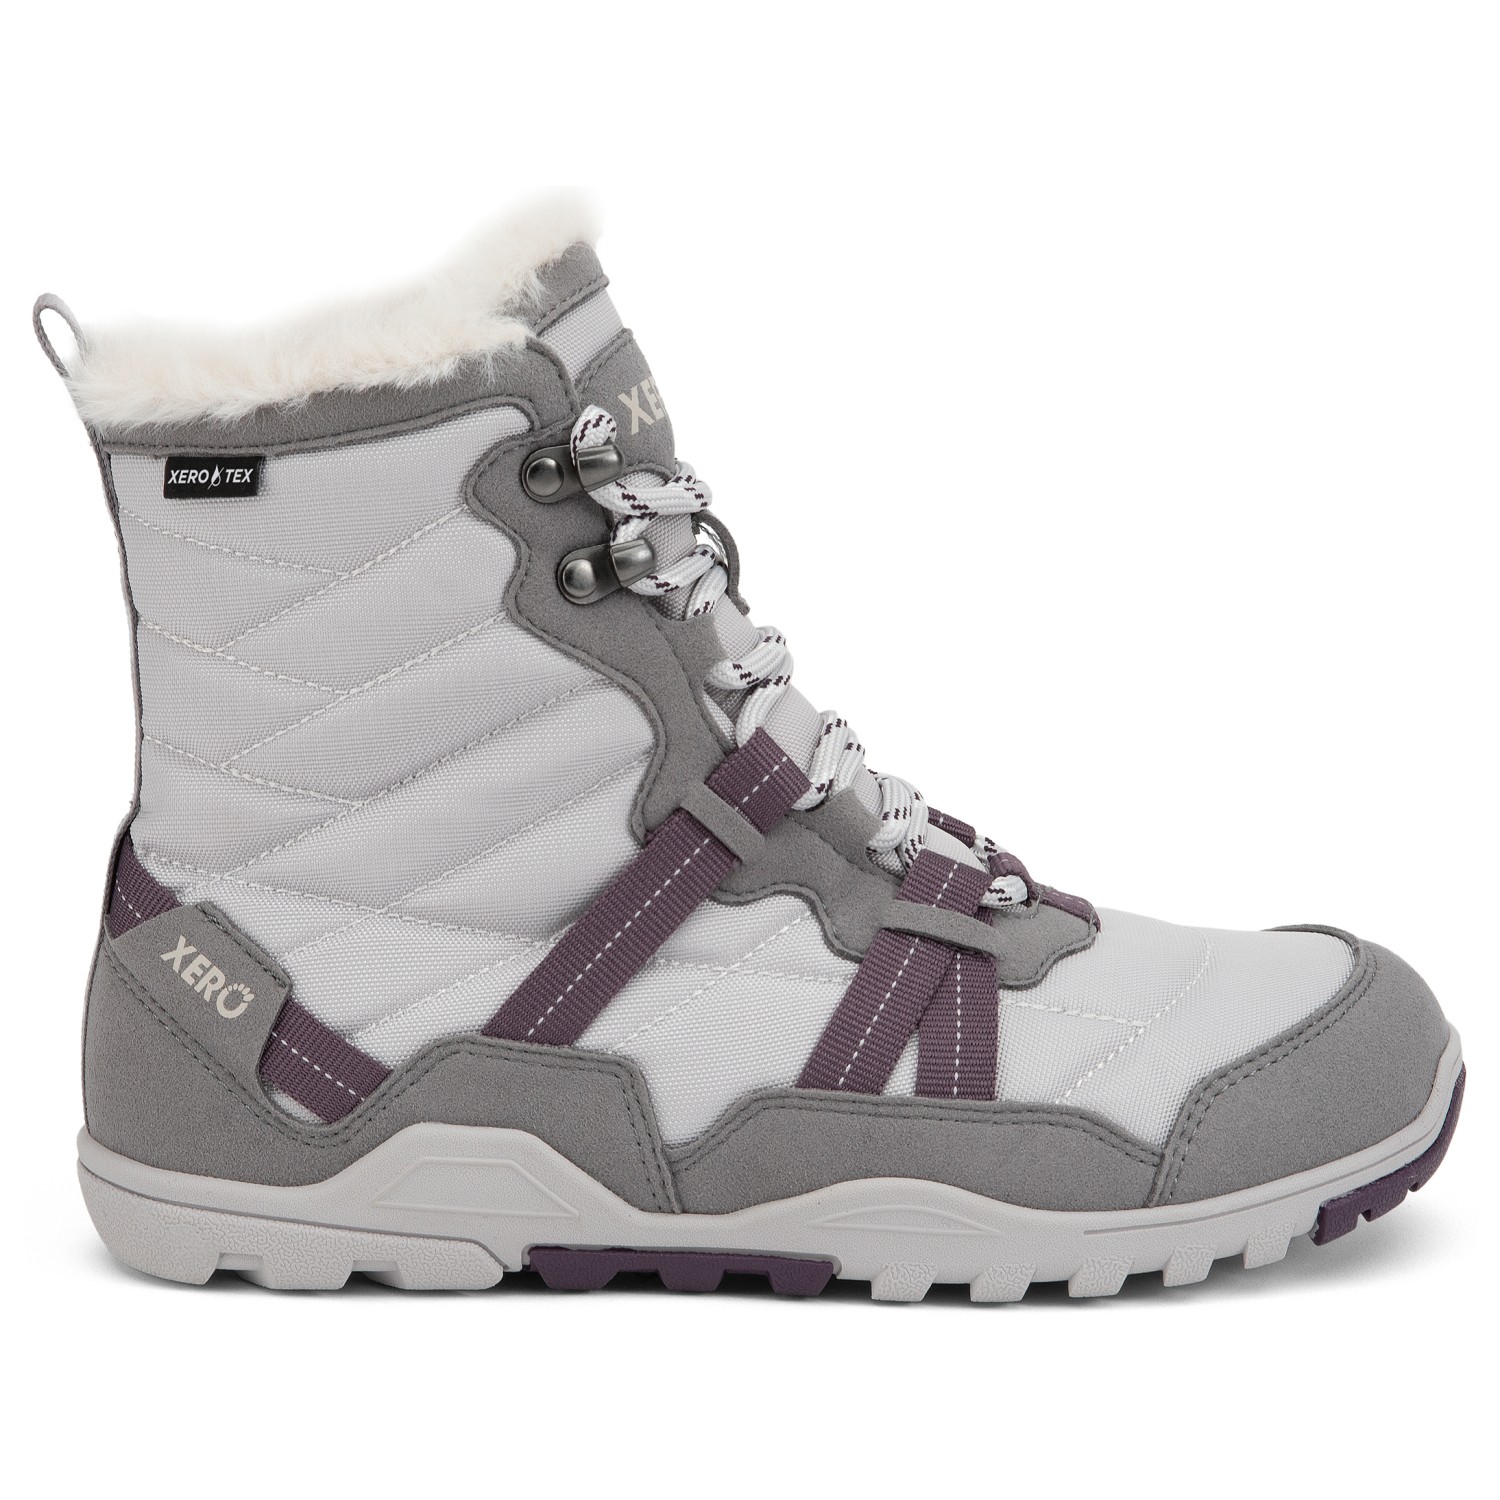 Босоножки Xero Shoes Women's Alpine, цвет Frost Gray/White